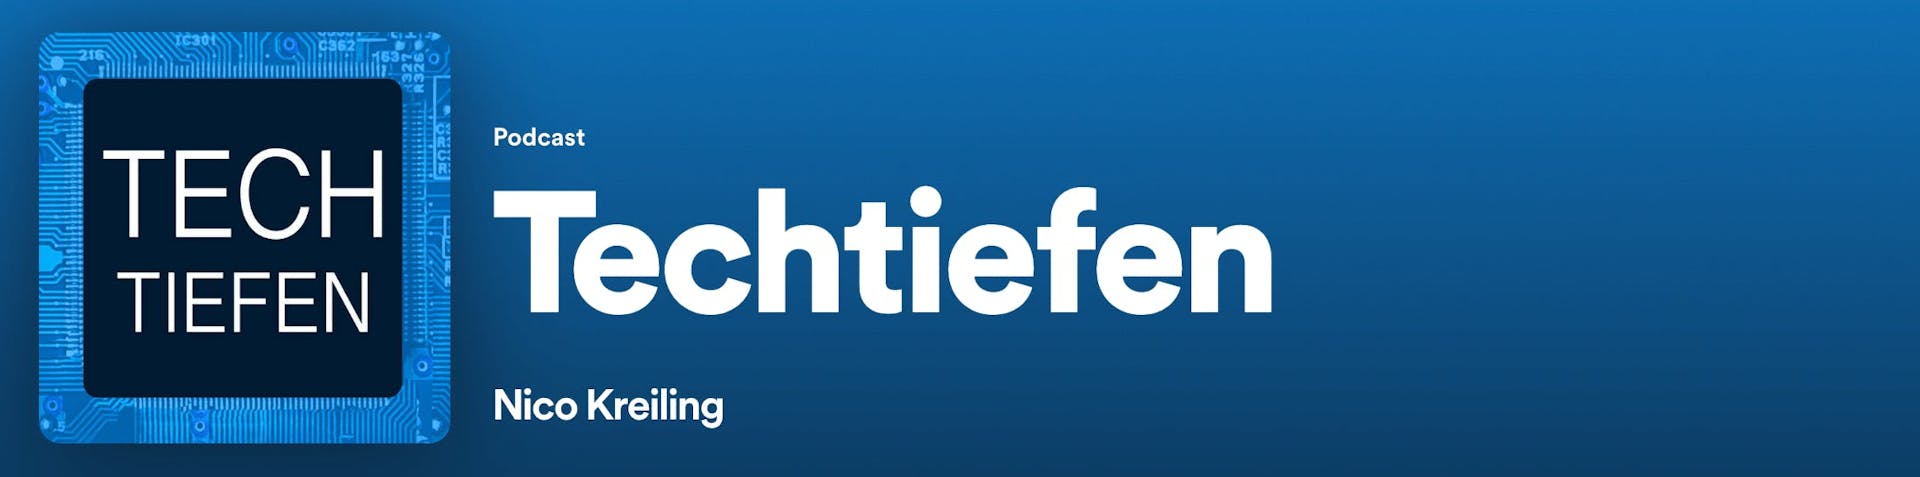 Techtiefen Podcast Banner